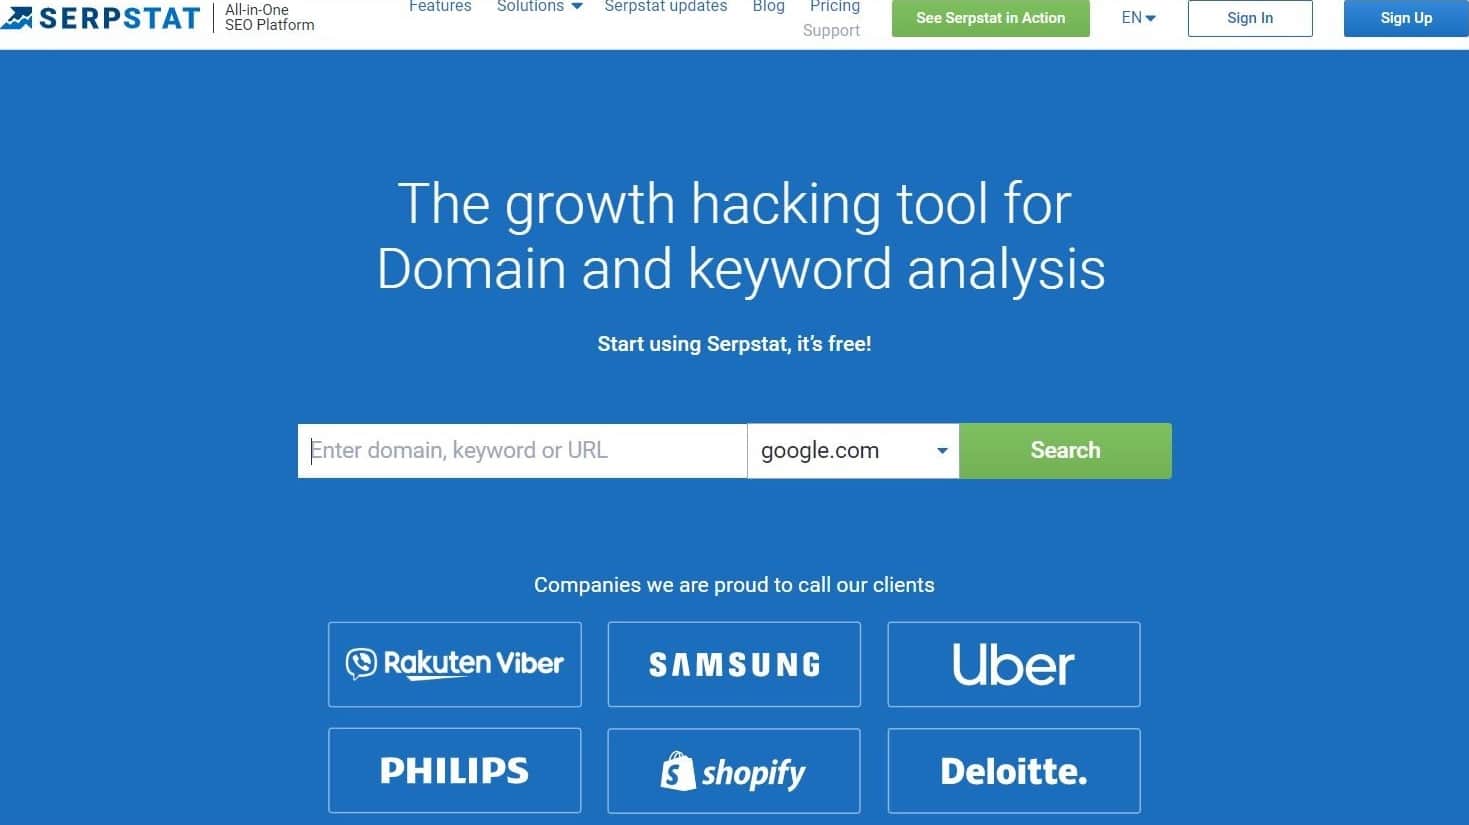 De startpagina van Serpstat met een zoekbalk en de slogan "The growth hacking tool for Domain and keyword analysis".